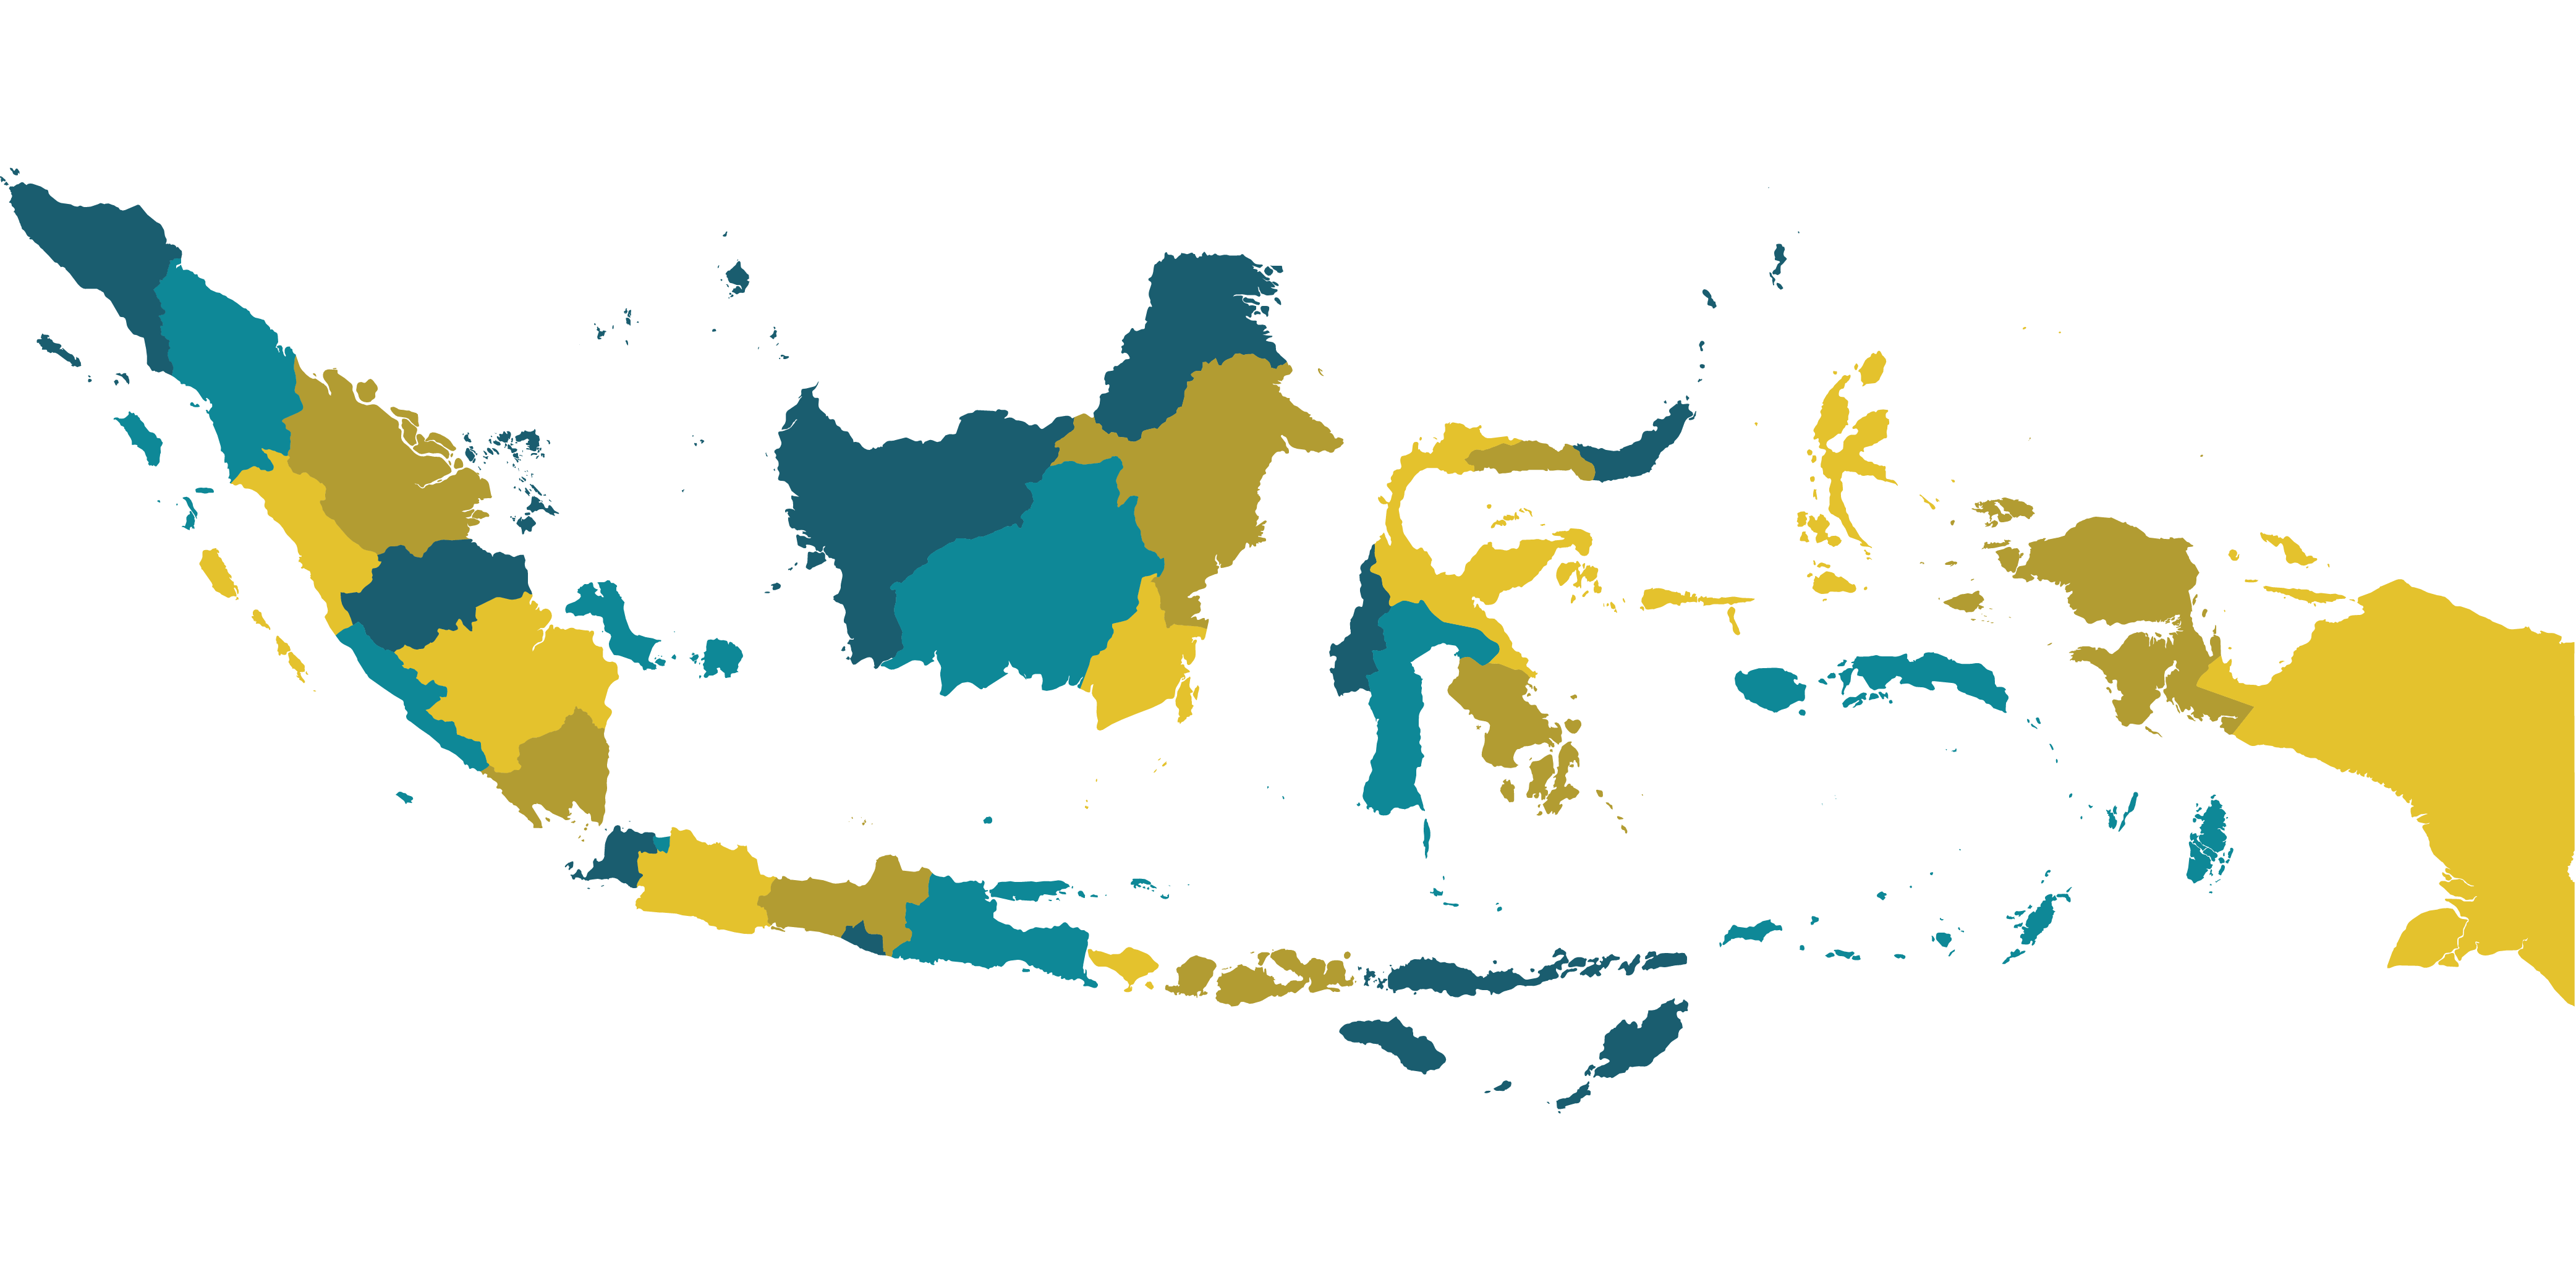 Peta Asia Png / JUAL PETA INDONESIA DAN DUNIA MURAH DAN LENGKAP